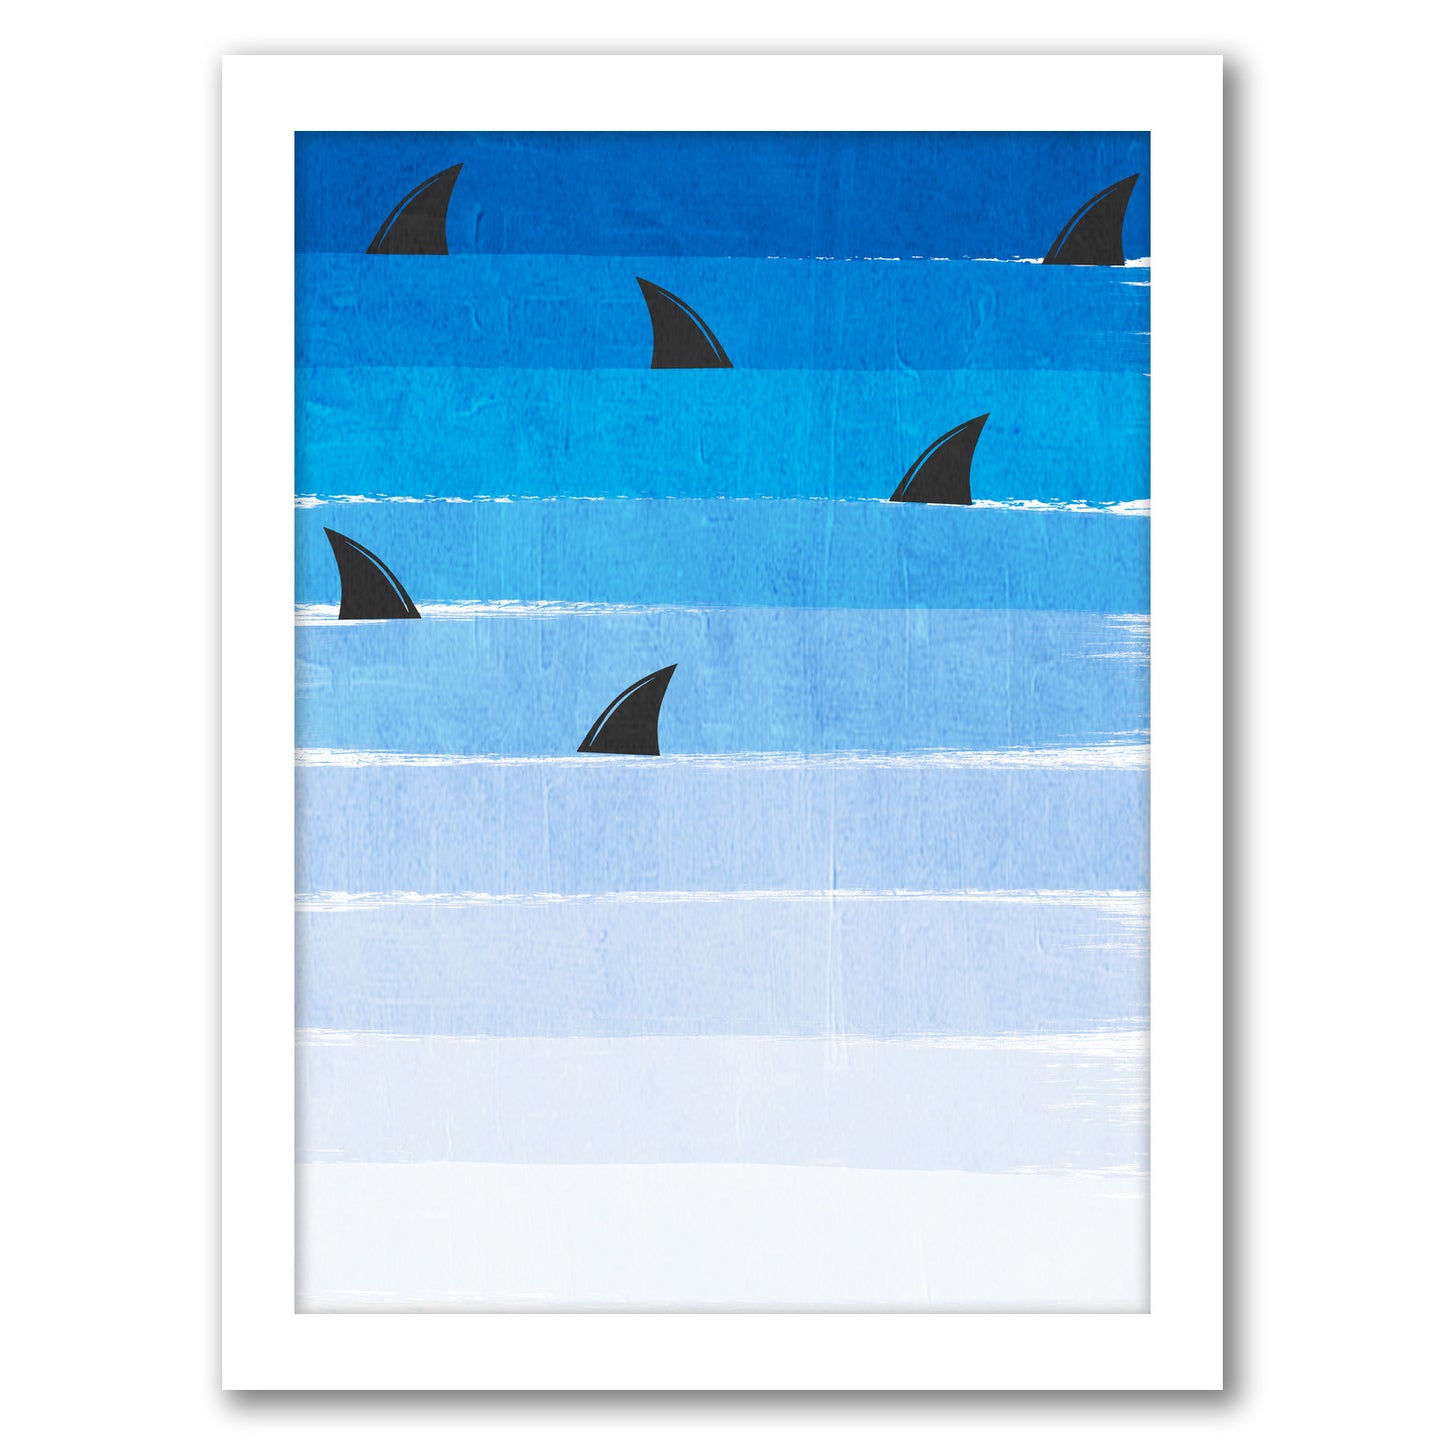 Sharks by Charlotte Winter - Framed Print